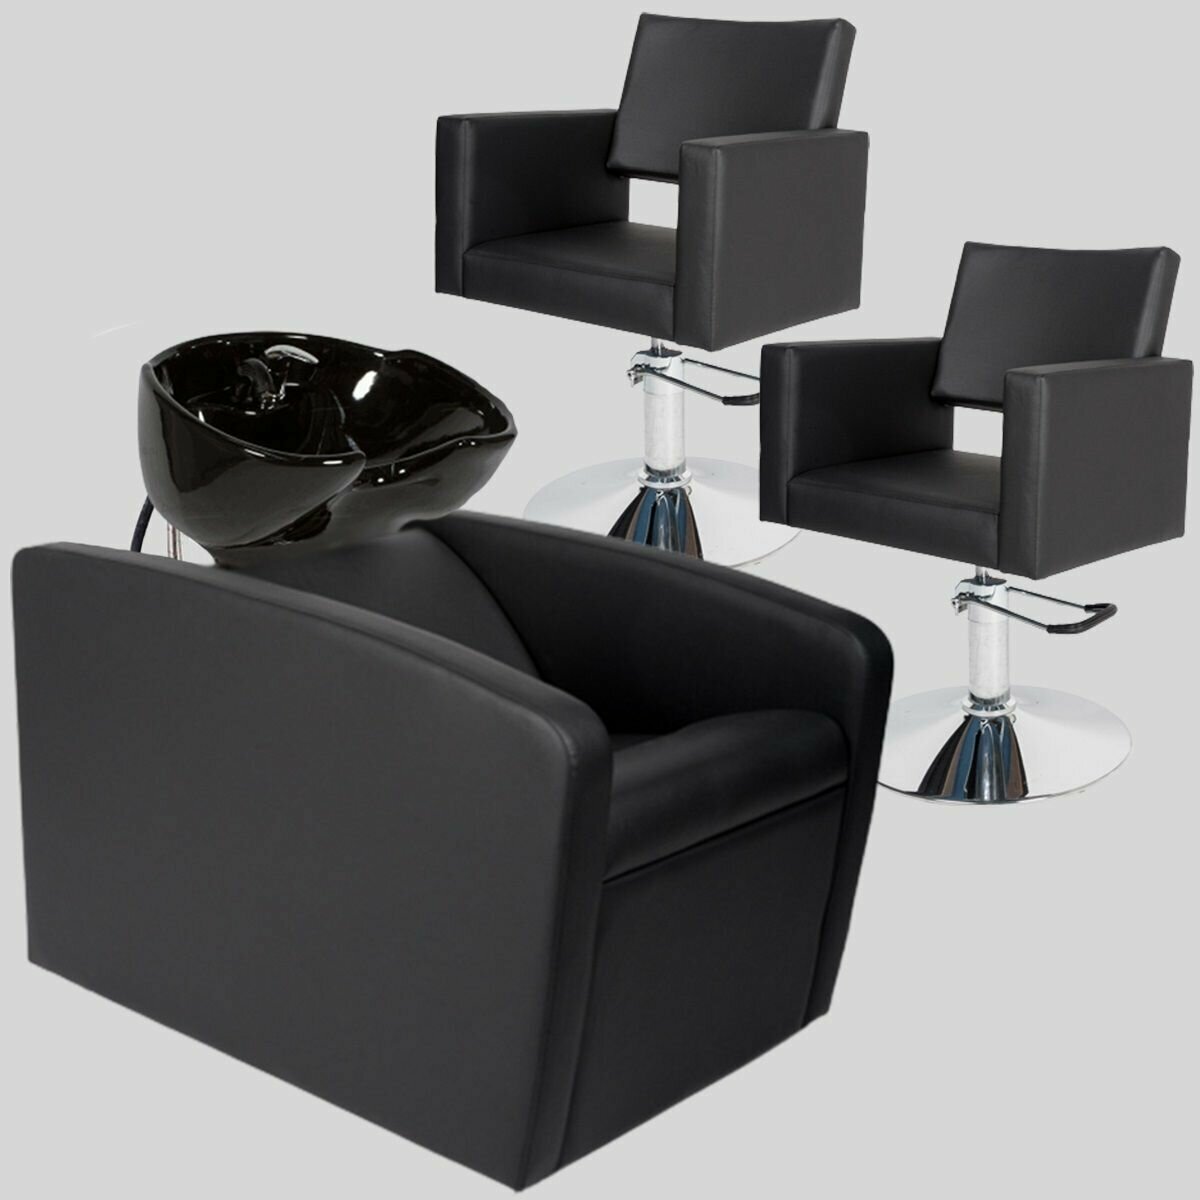 Парикмахерский комплект "Перфект ЭКО", Черный, 2 кресла гидравлика диск, 1 мойка раковина черная глубокая